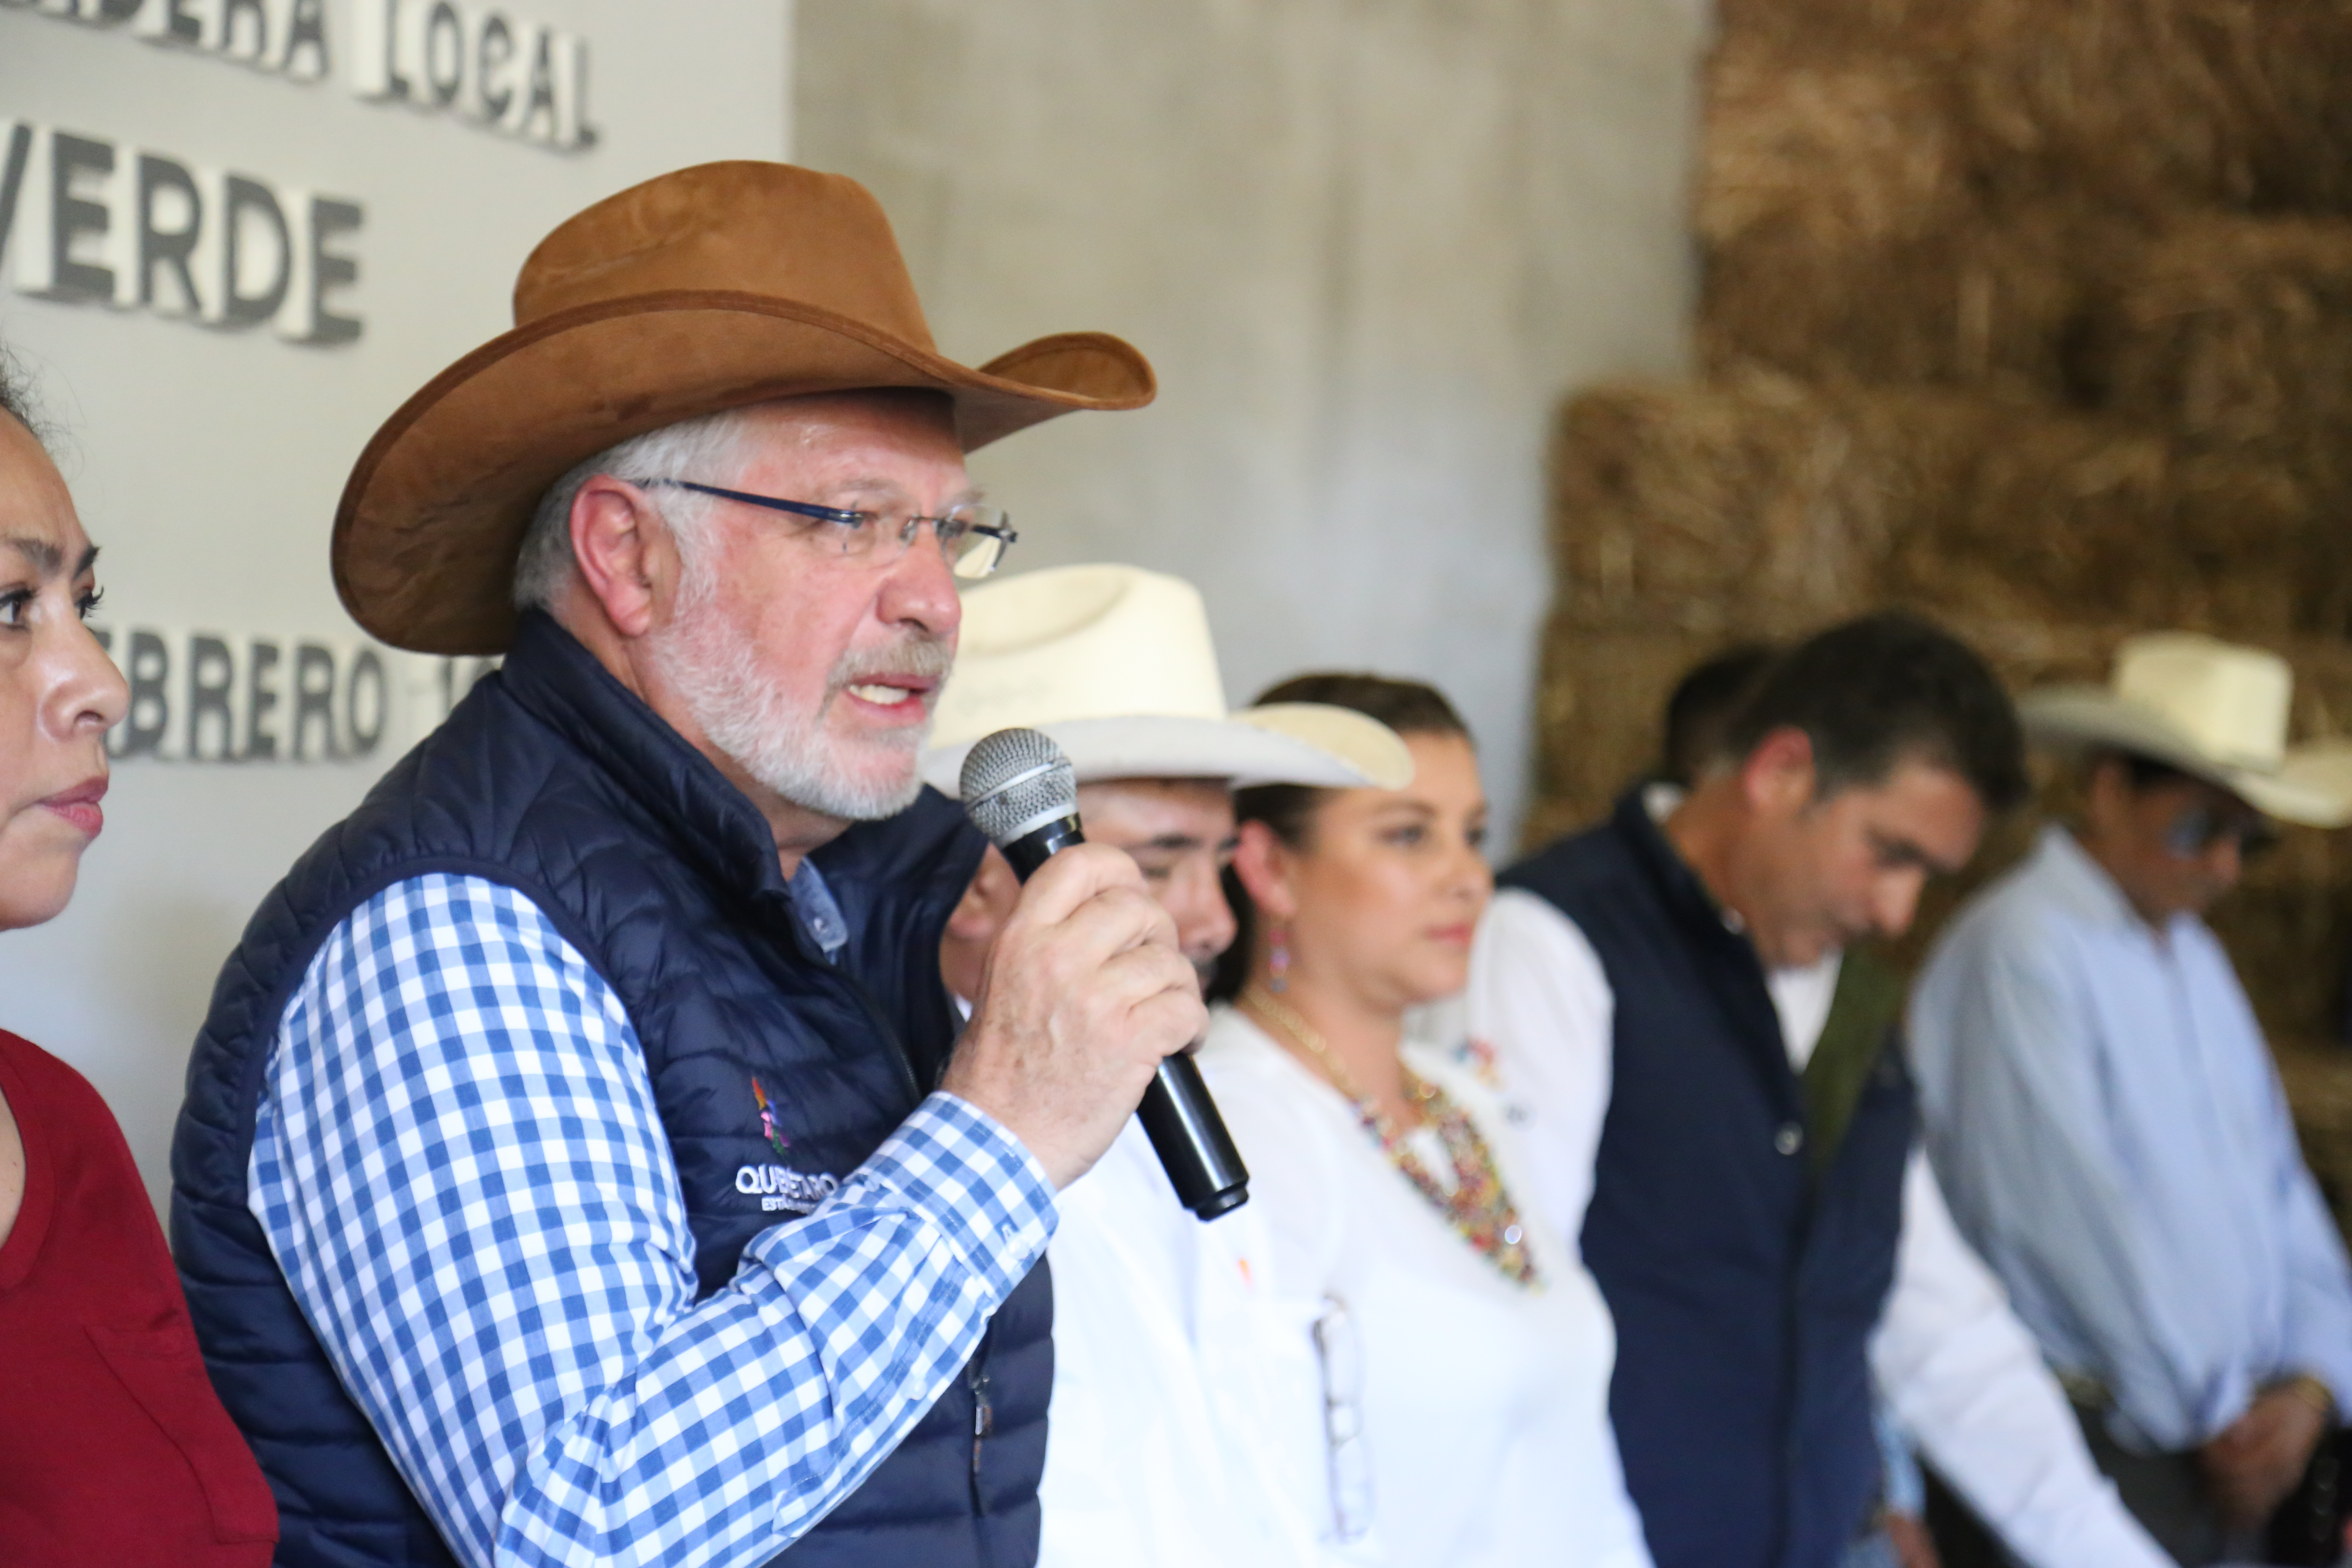  Inaugura Sedea farmacia veterinaria para impulsar ganadería en zona serrana